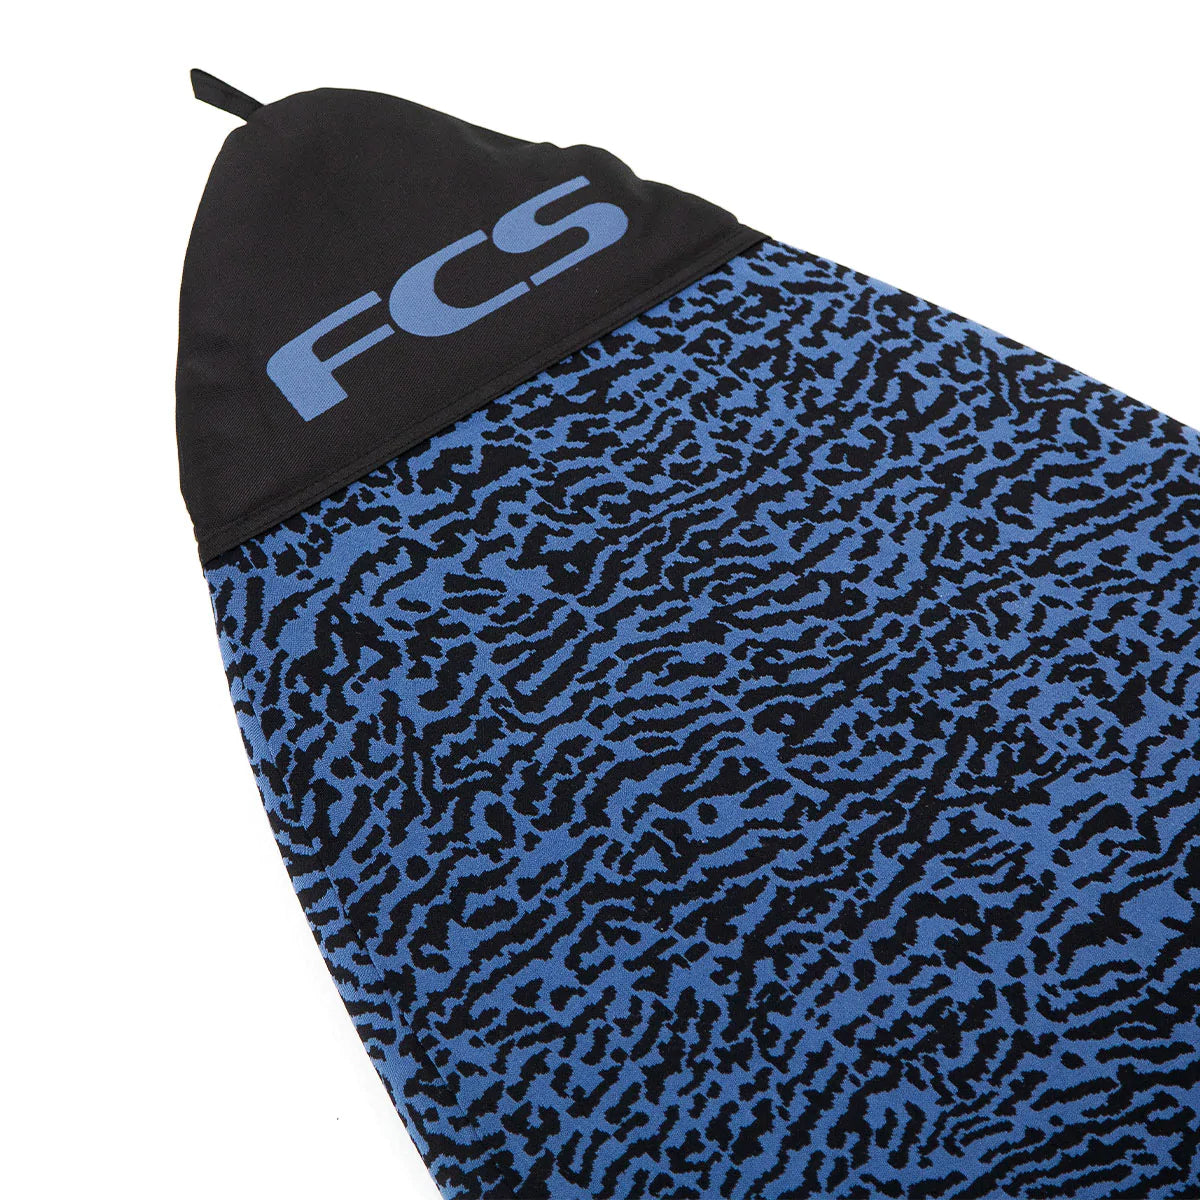 FCS 8'0" Stretch Funboard Sock